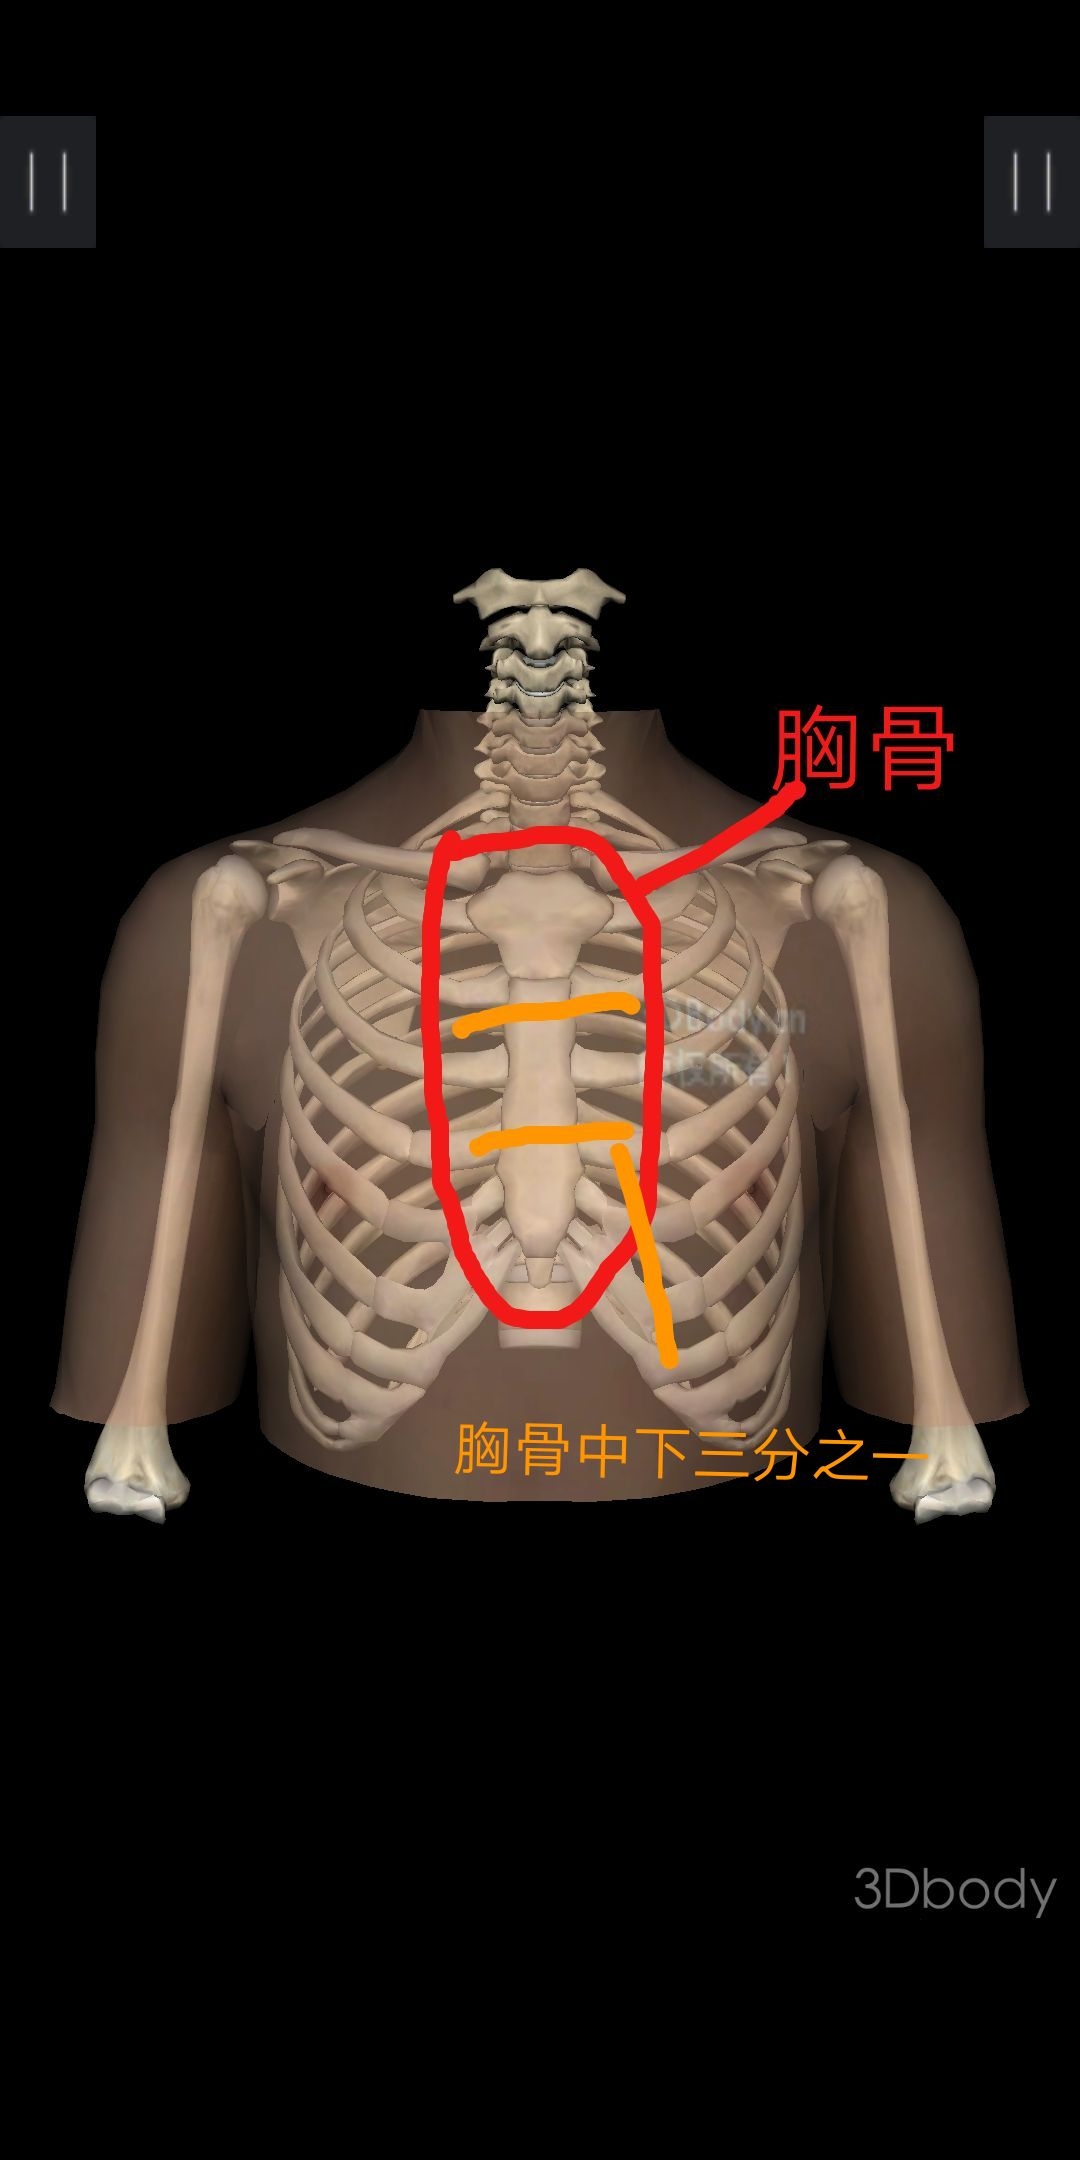 胸外按压的按压点即人体正中线与胸骨中下三分之一的交点部位.